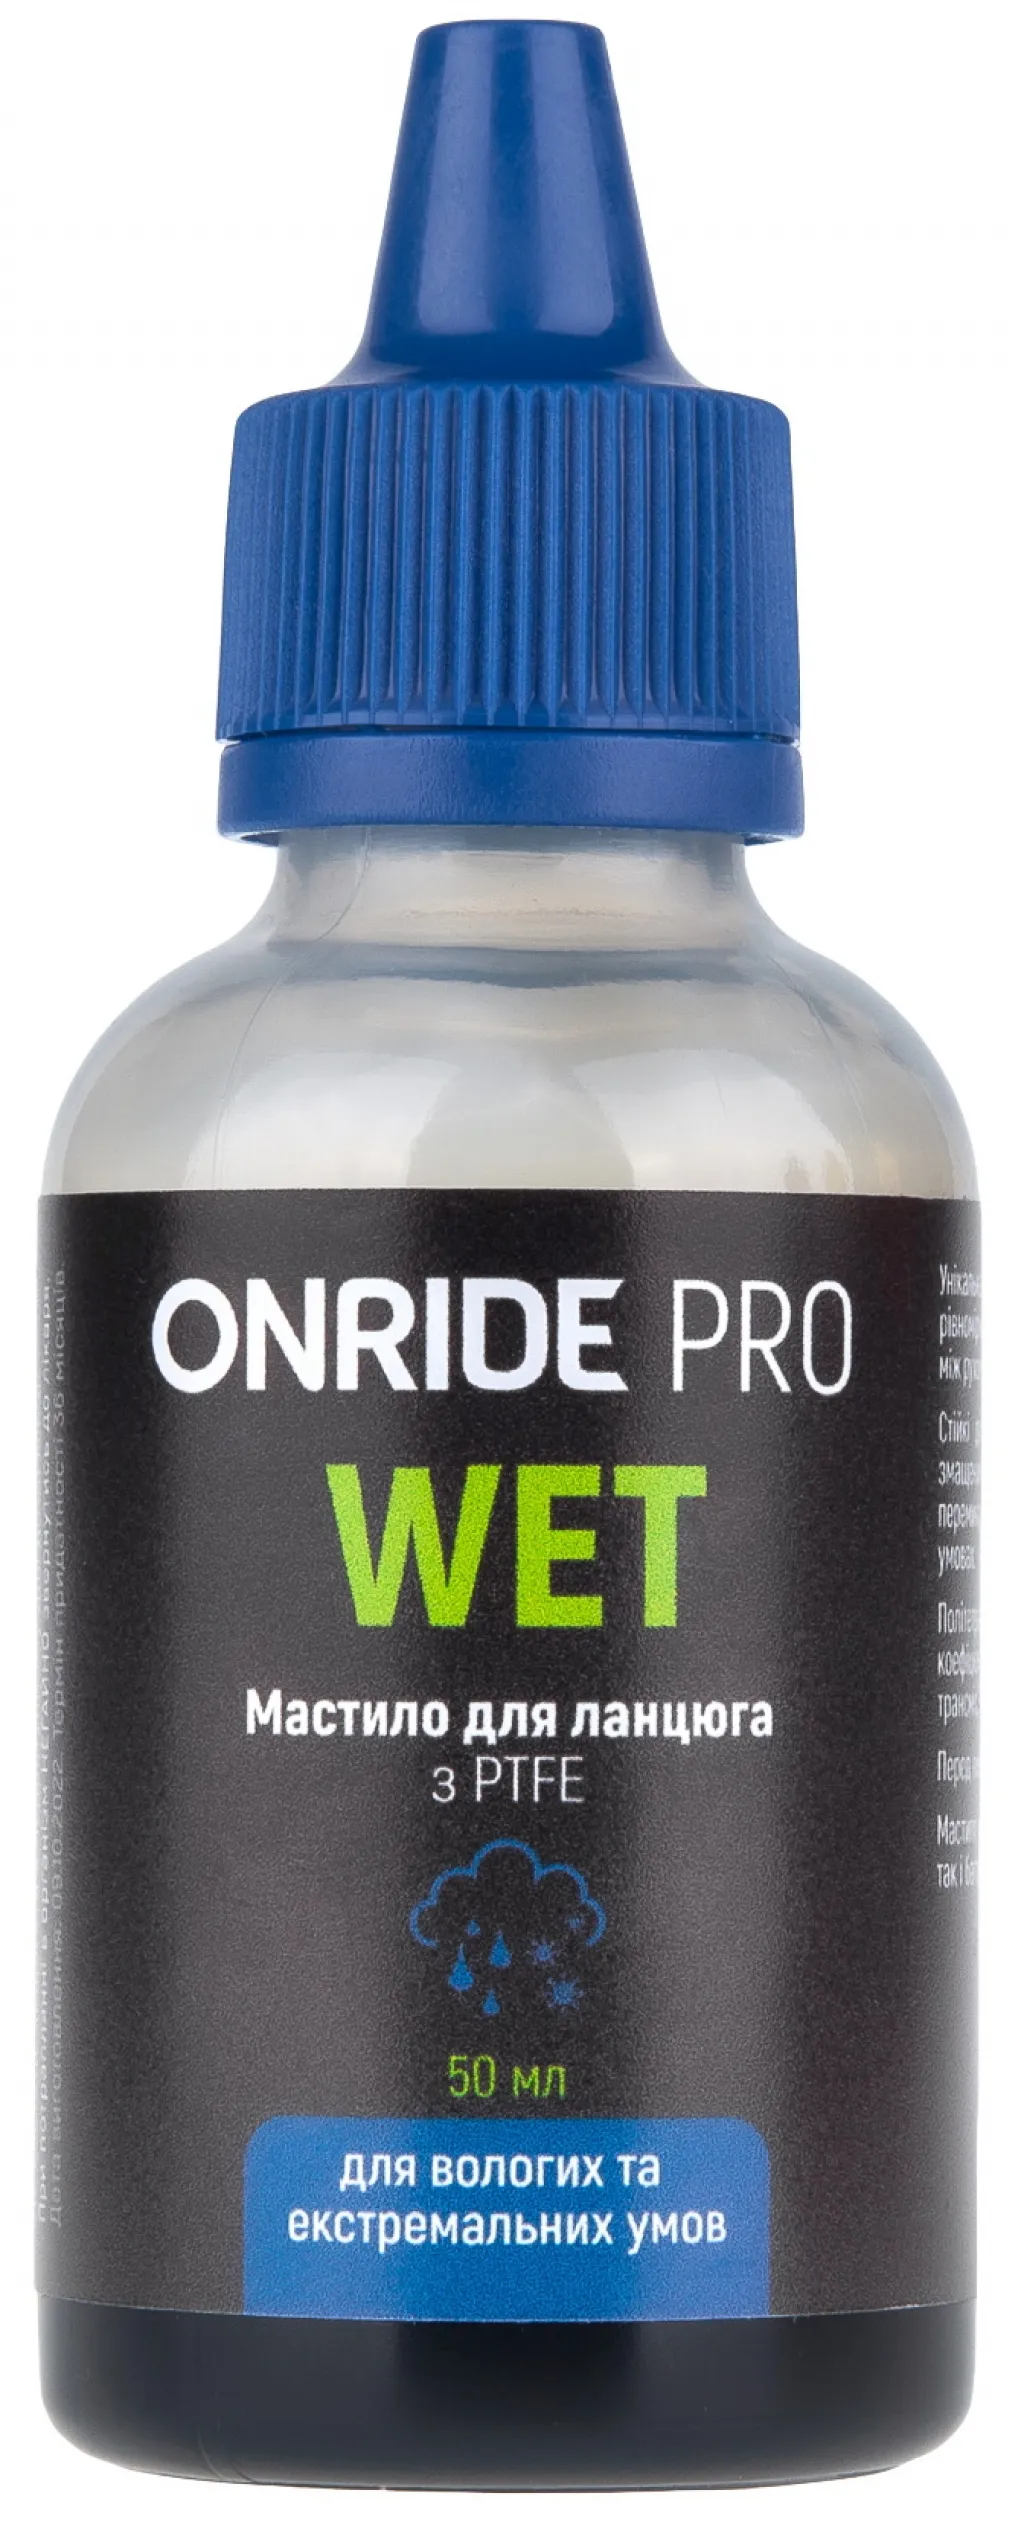 Смазка для цепи ONRIDE PRO Wet з PTFE для влажных условий 50мл